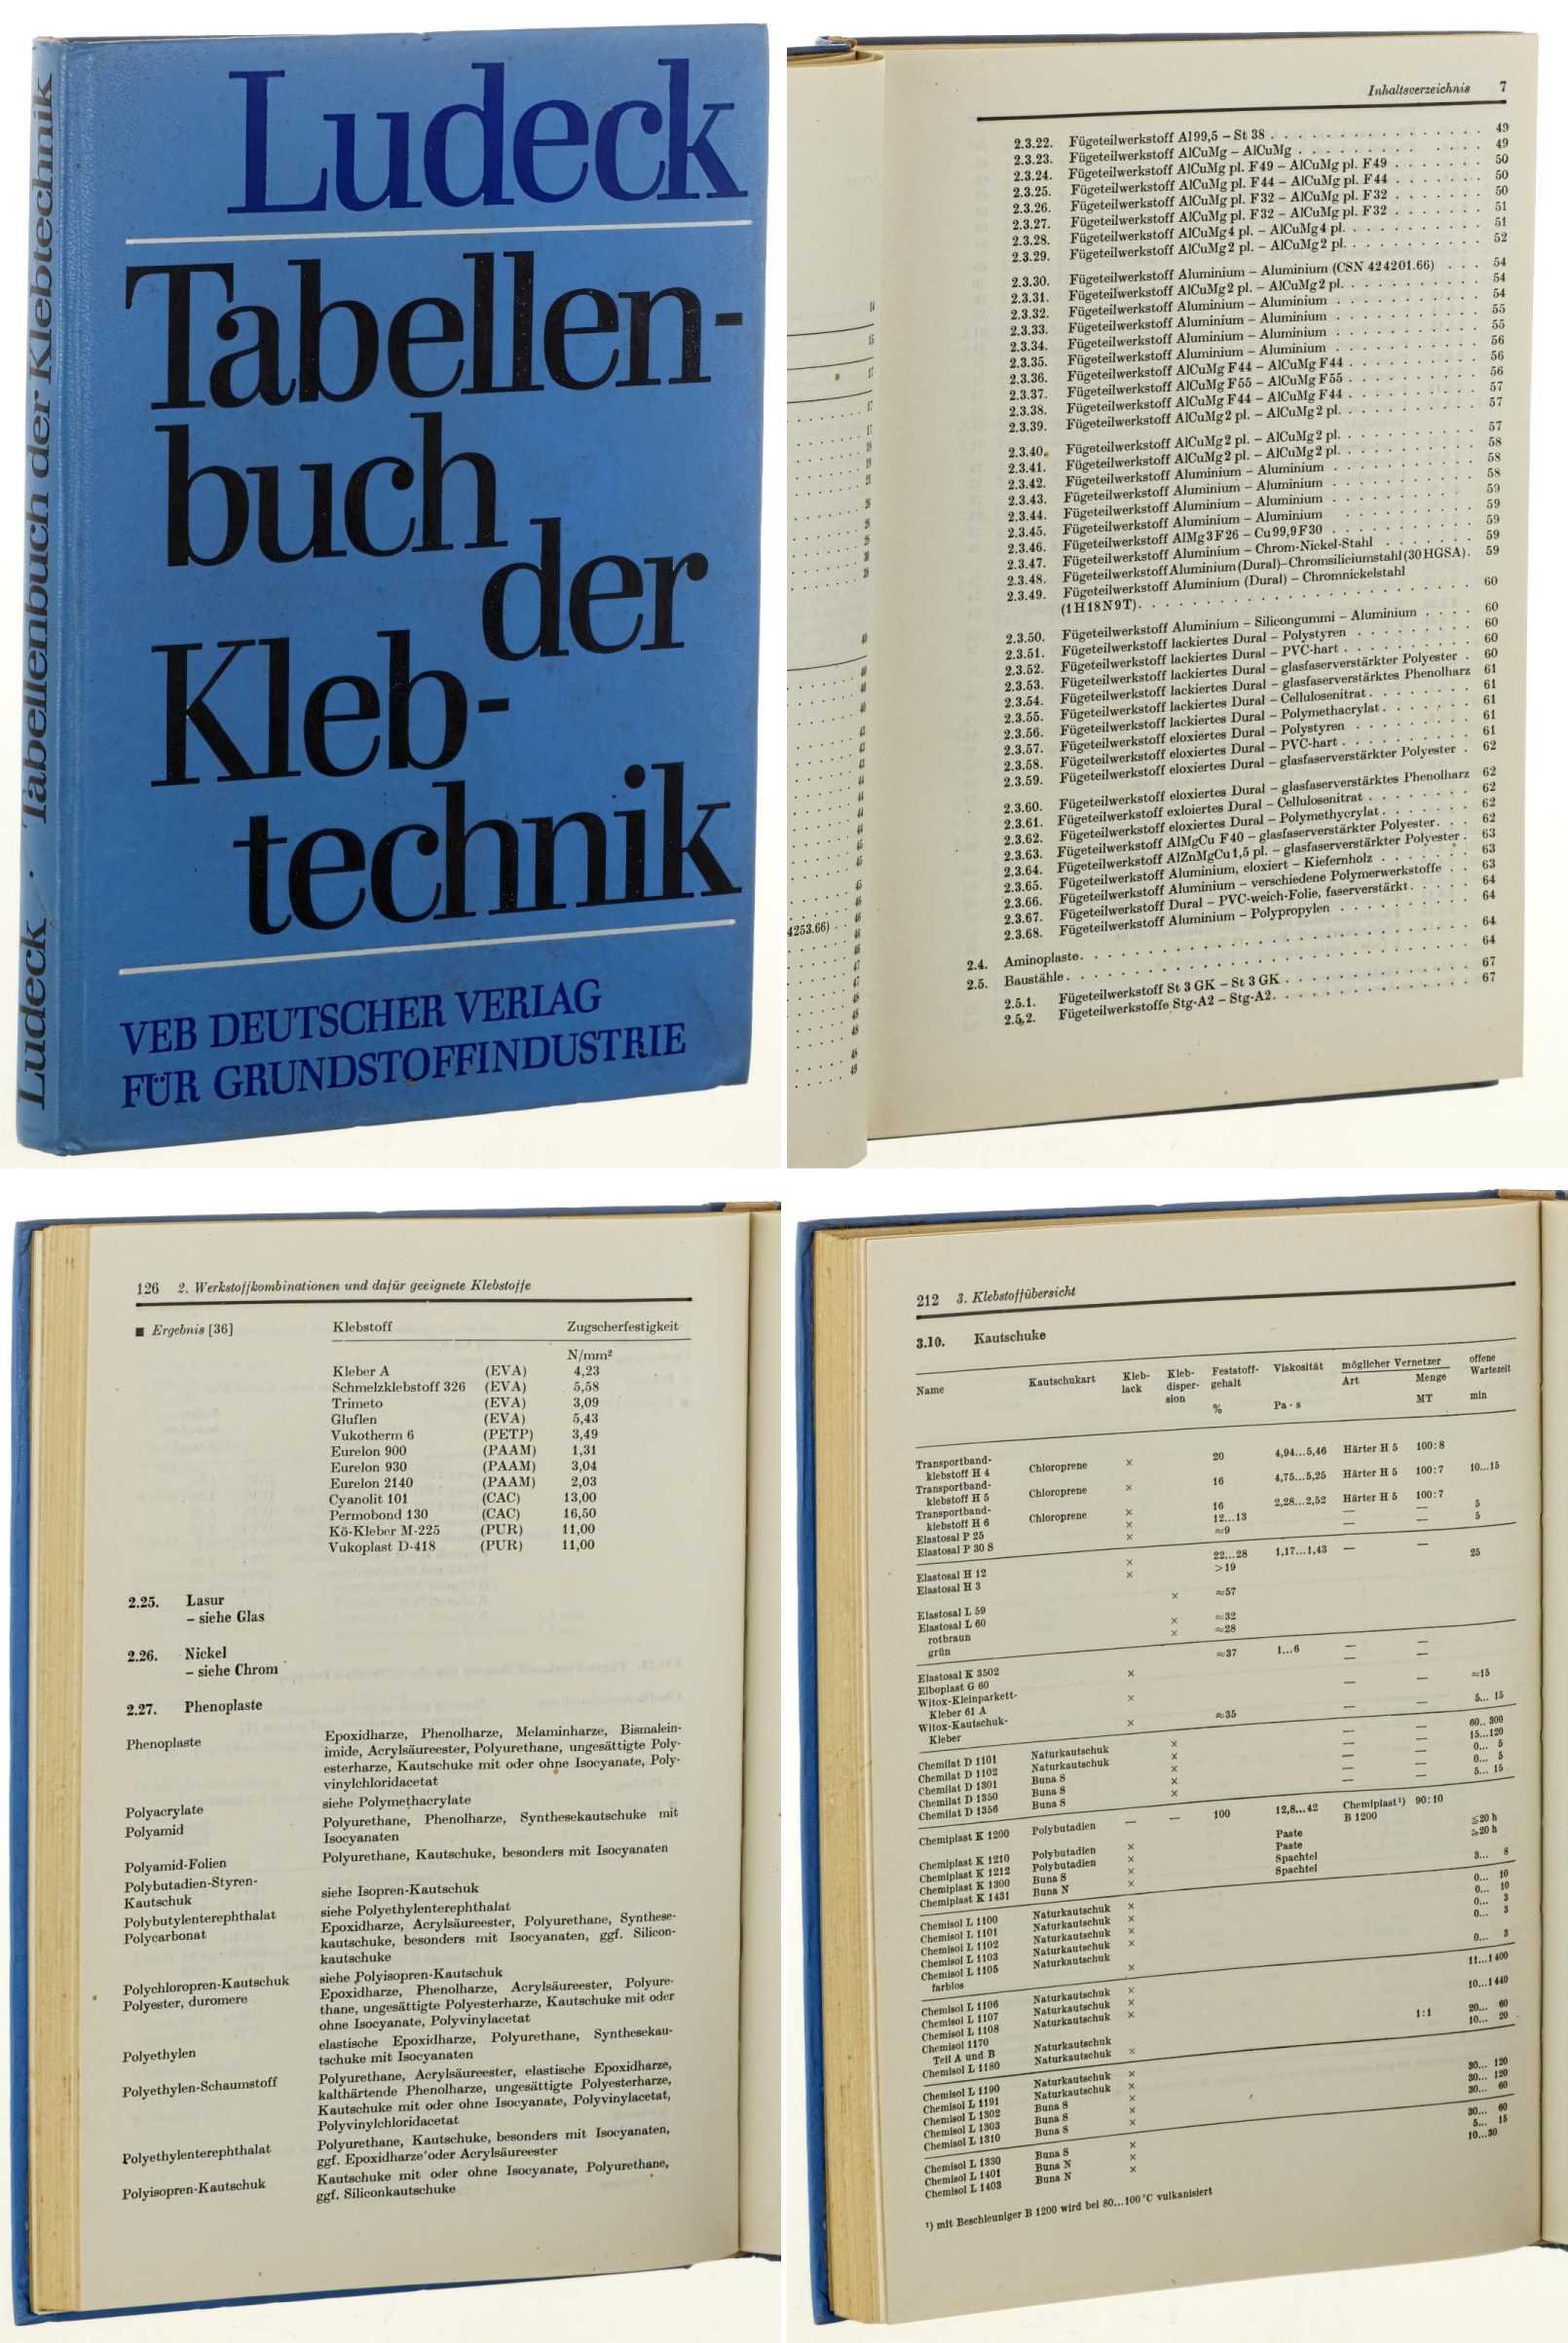 Ludeck, Wolfgang:  Tabellenbuch der Klebtechnik. 